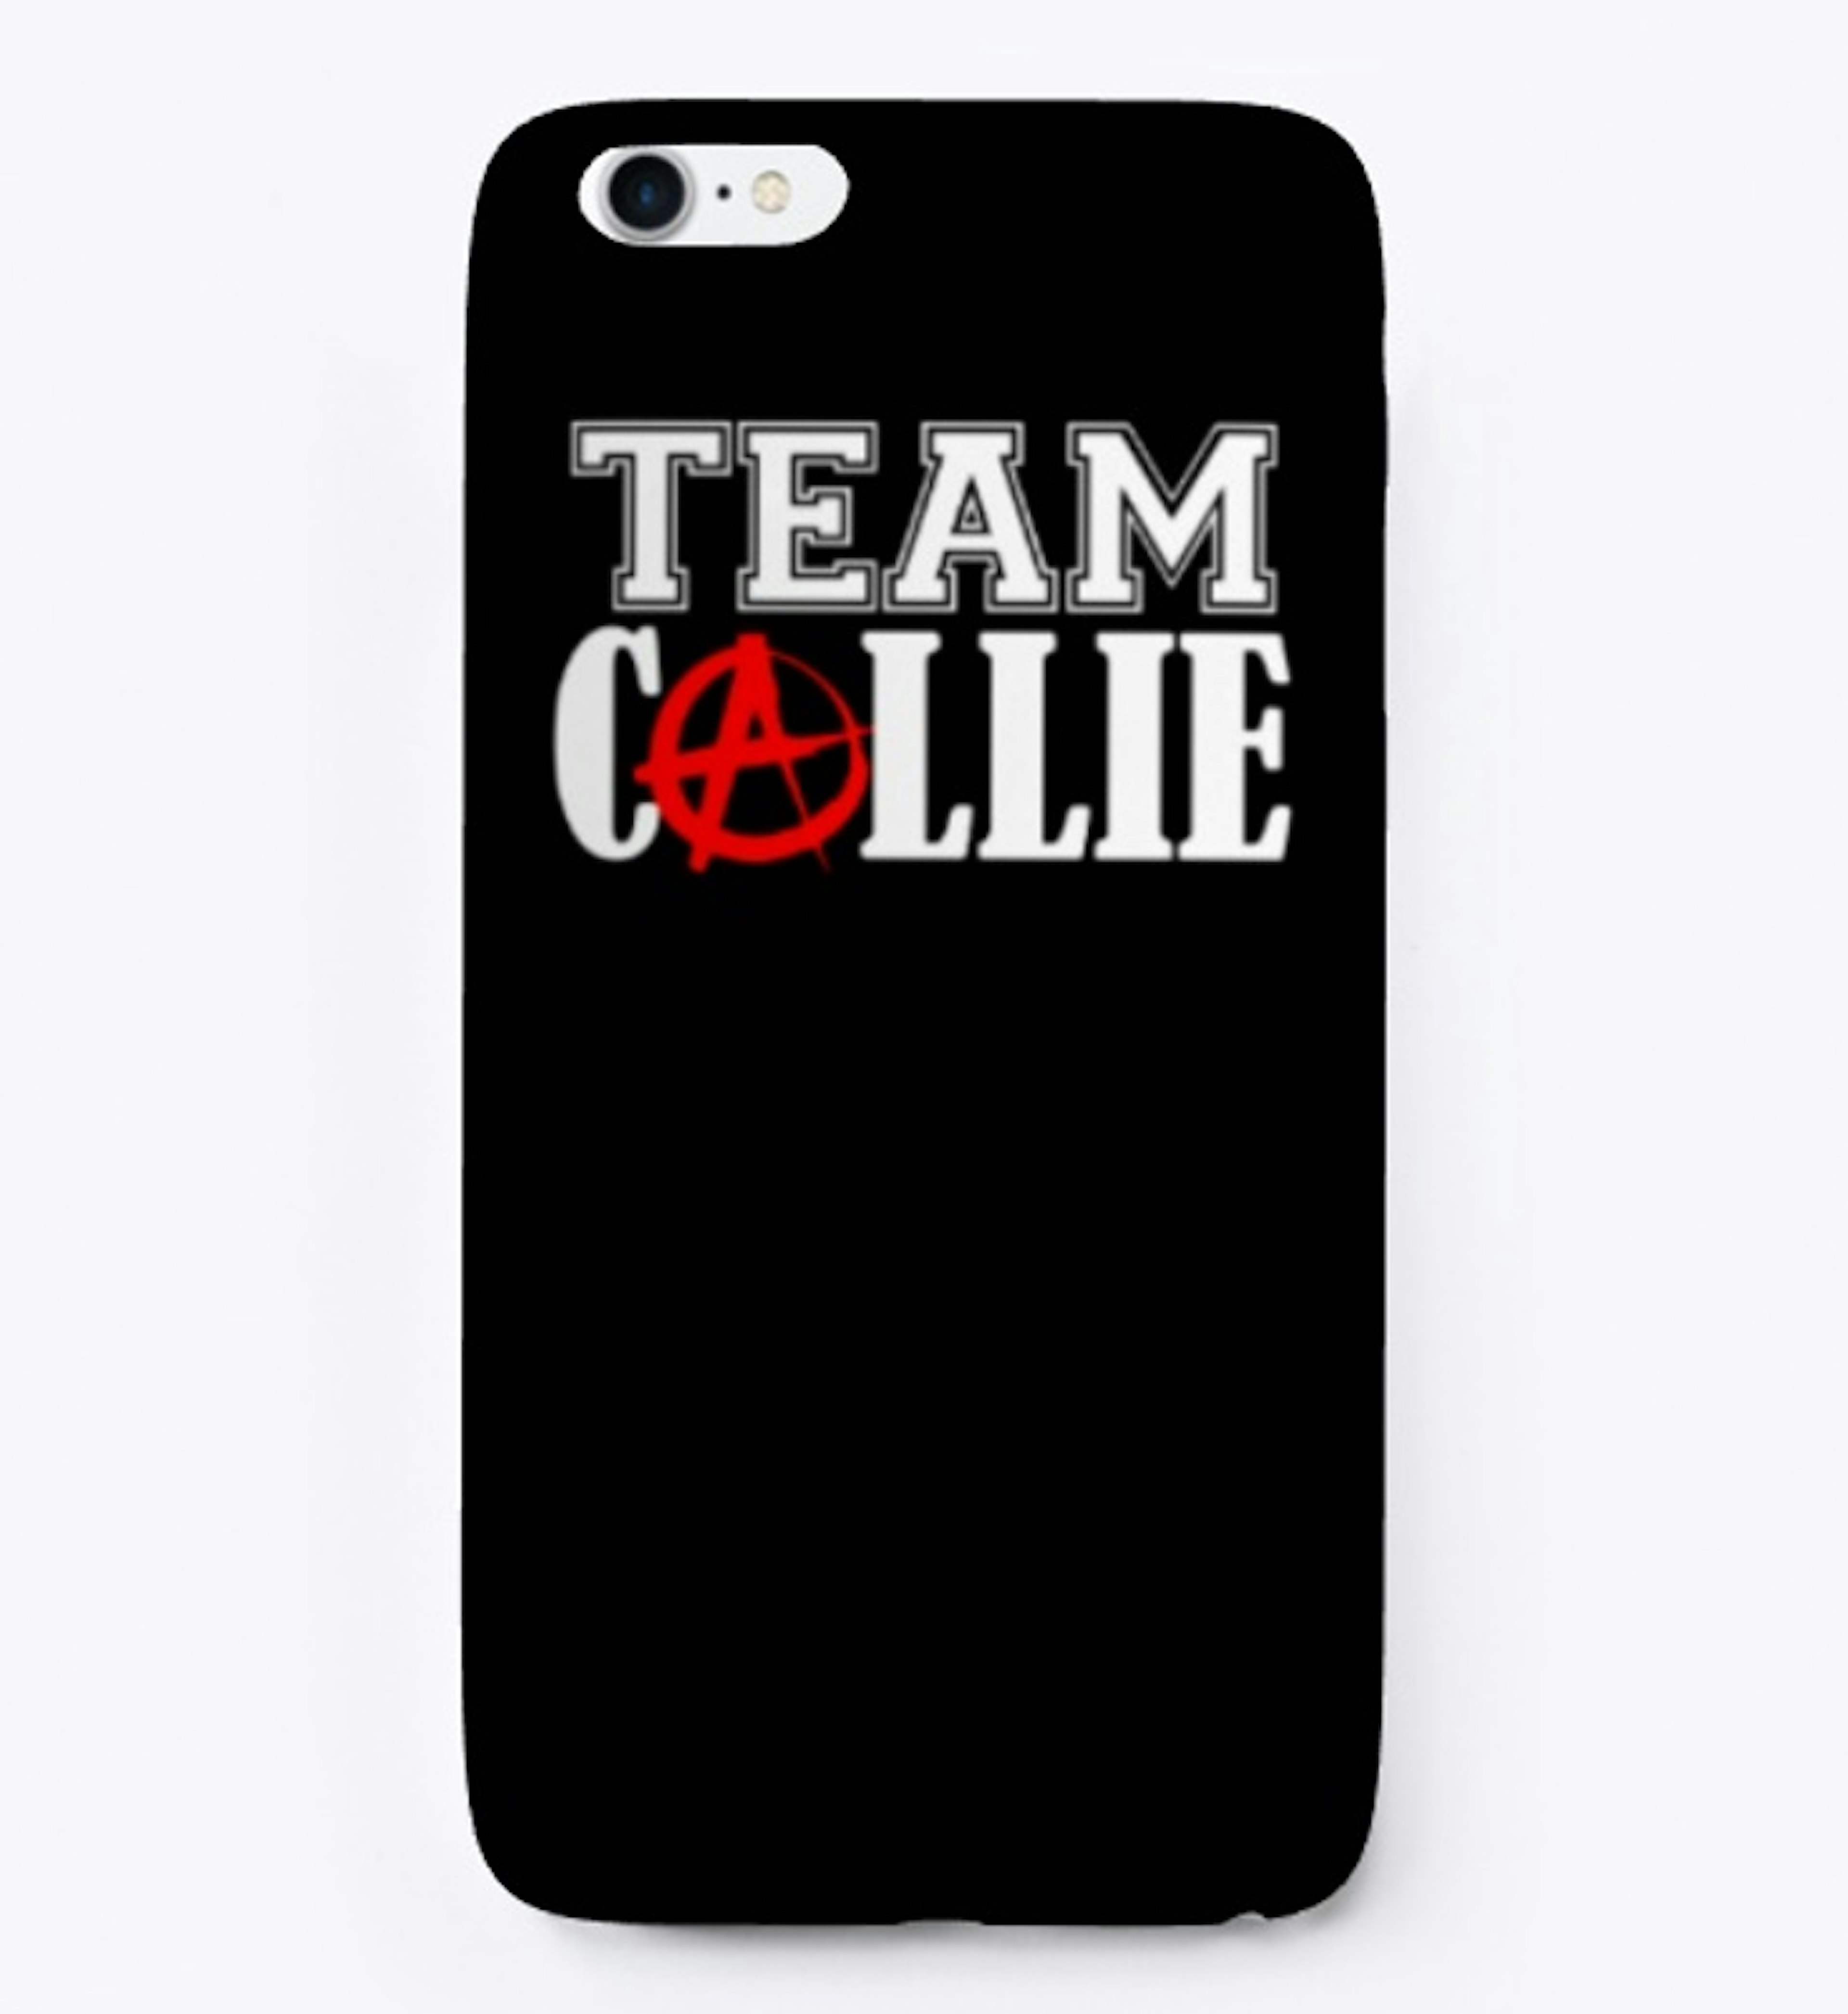 Team Callie iphone Case